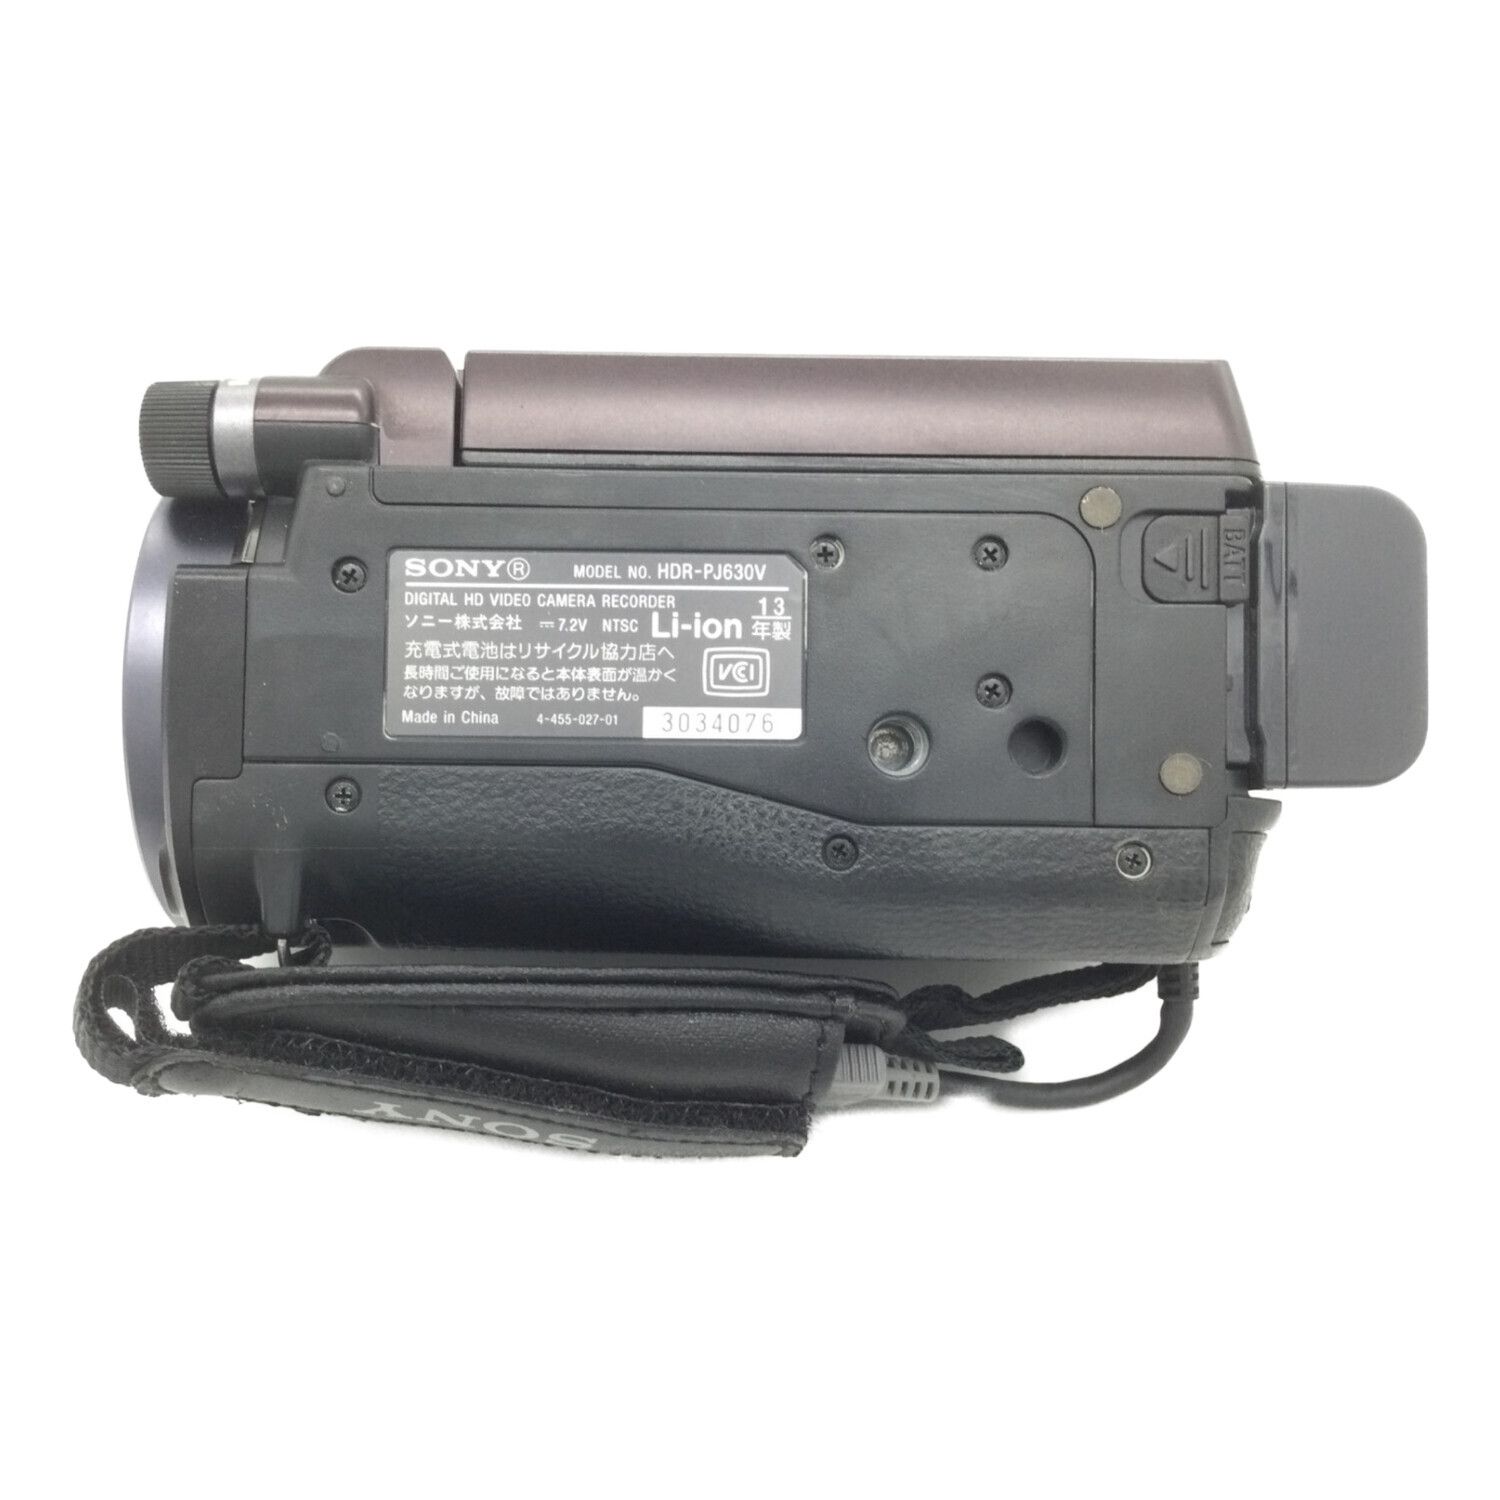 ソニー SONY HDR-PJ630V Handycam